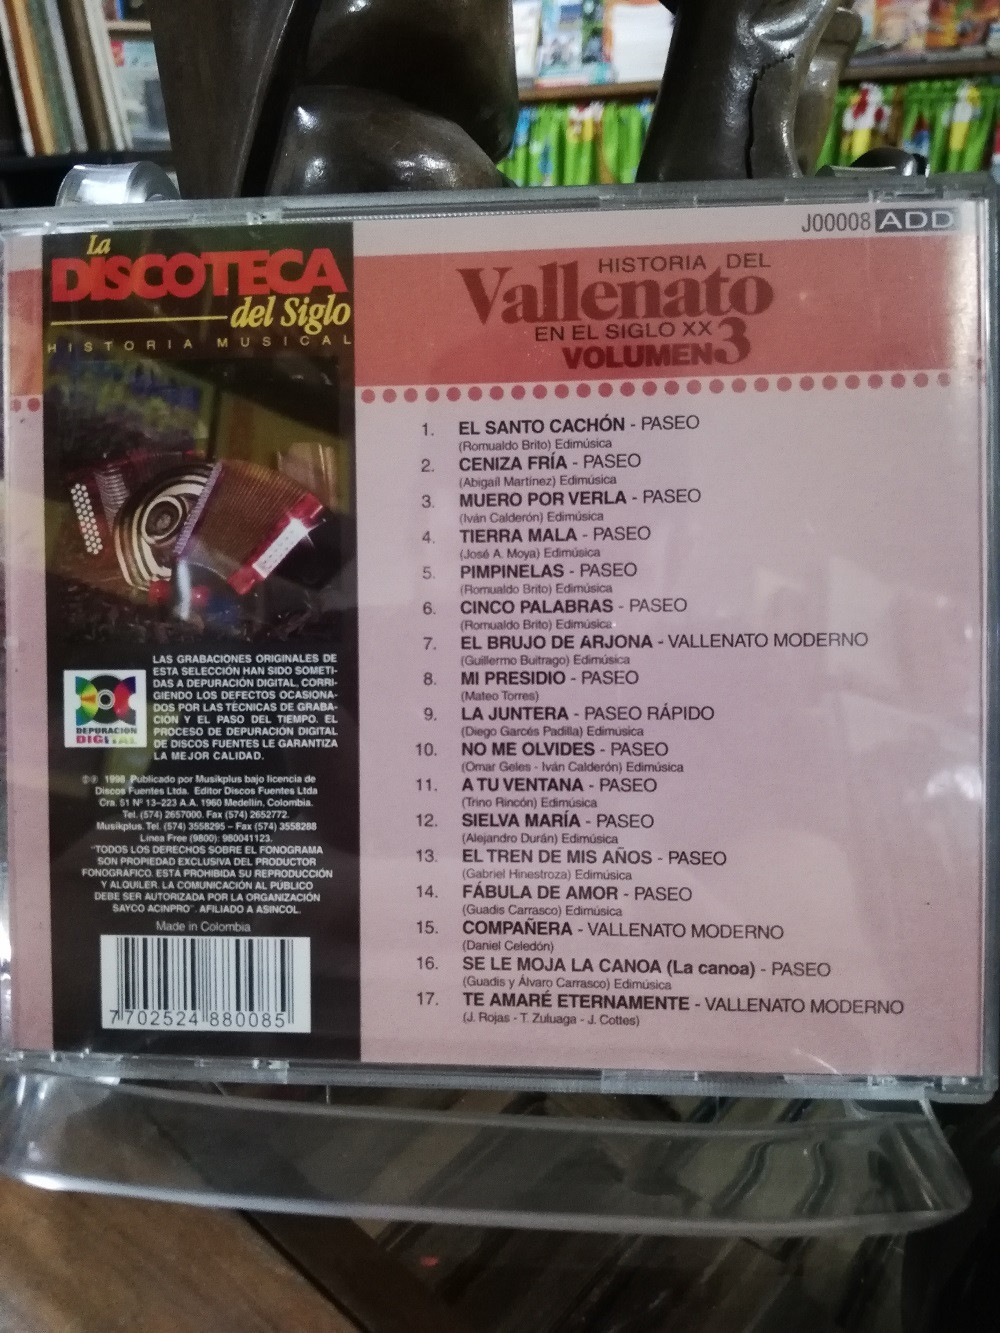 Imagen CD HISTORIA DEL VALLENATO EN EL SIGLO XX - HISTORIA DEL VALLENATO EN EL SIGLO XX VOL. 3 2